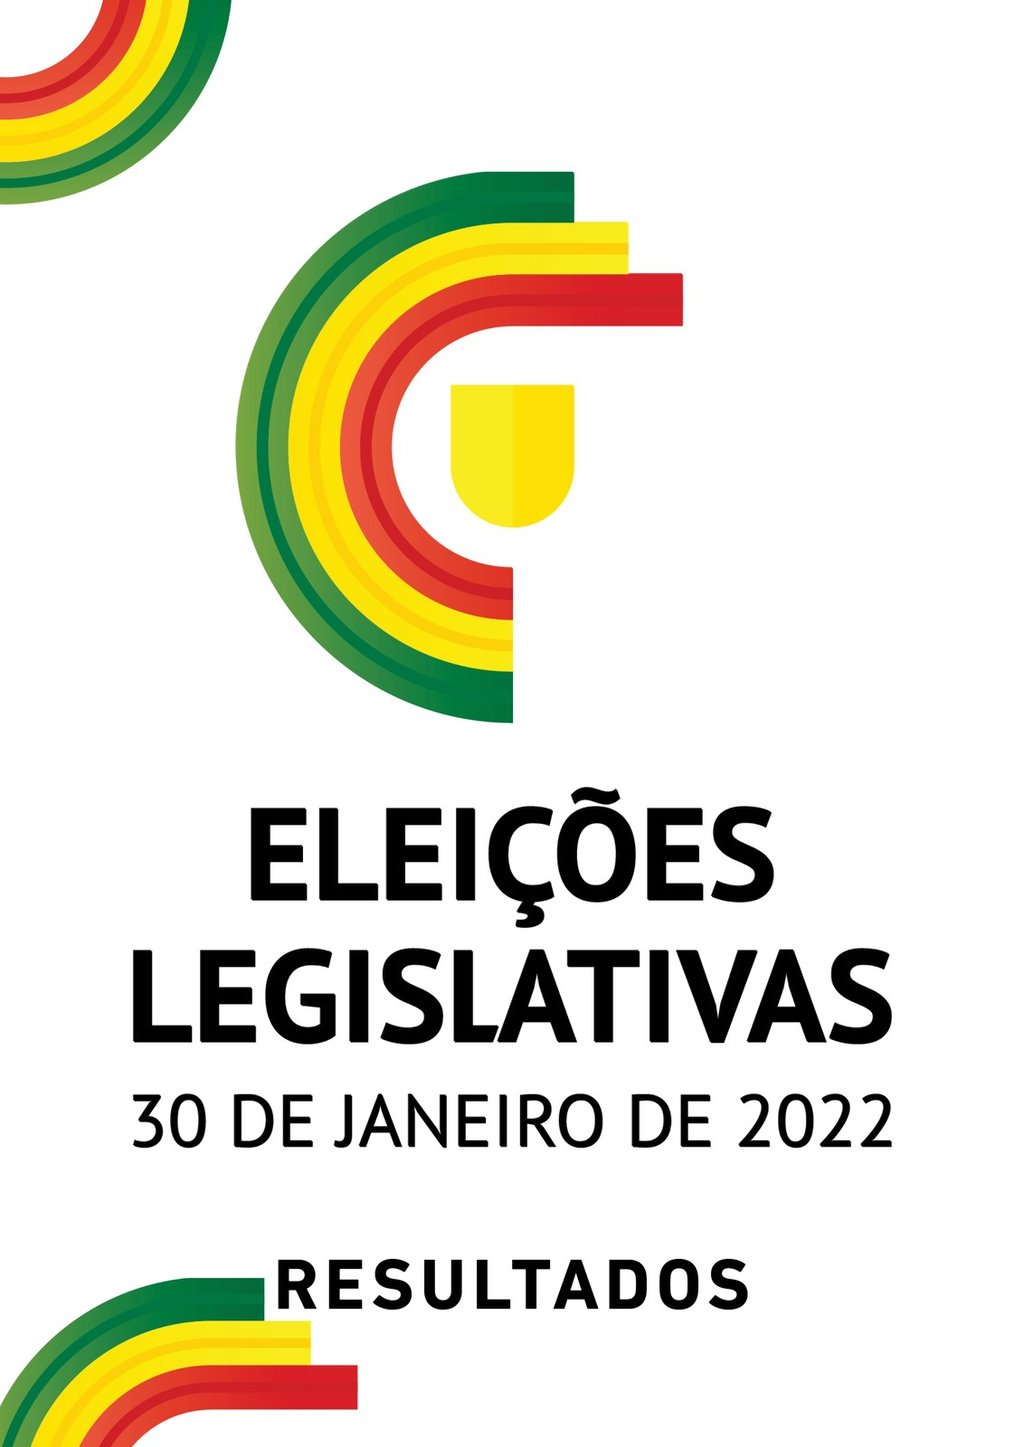 Eleicoes legislativas 2022 1 1024 2500